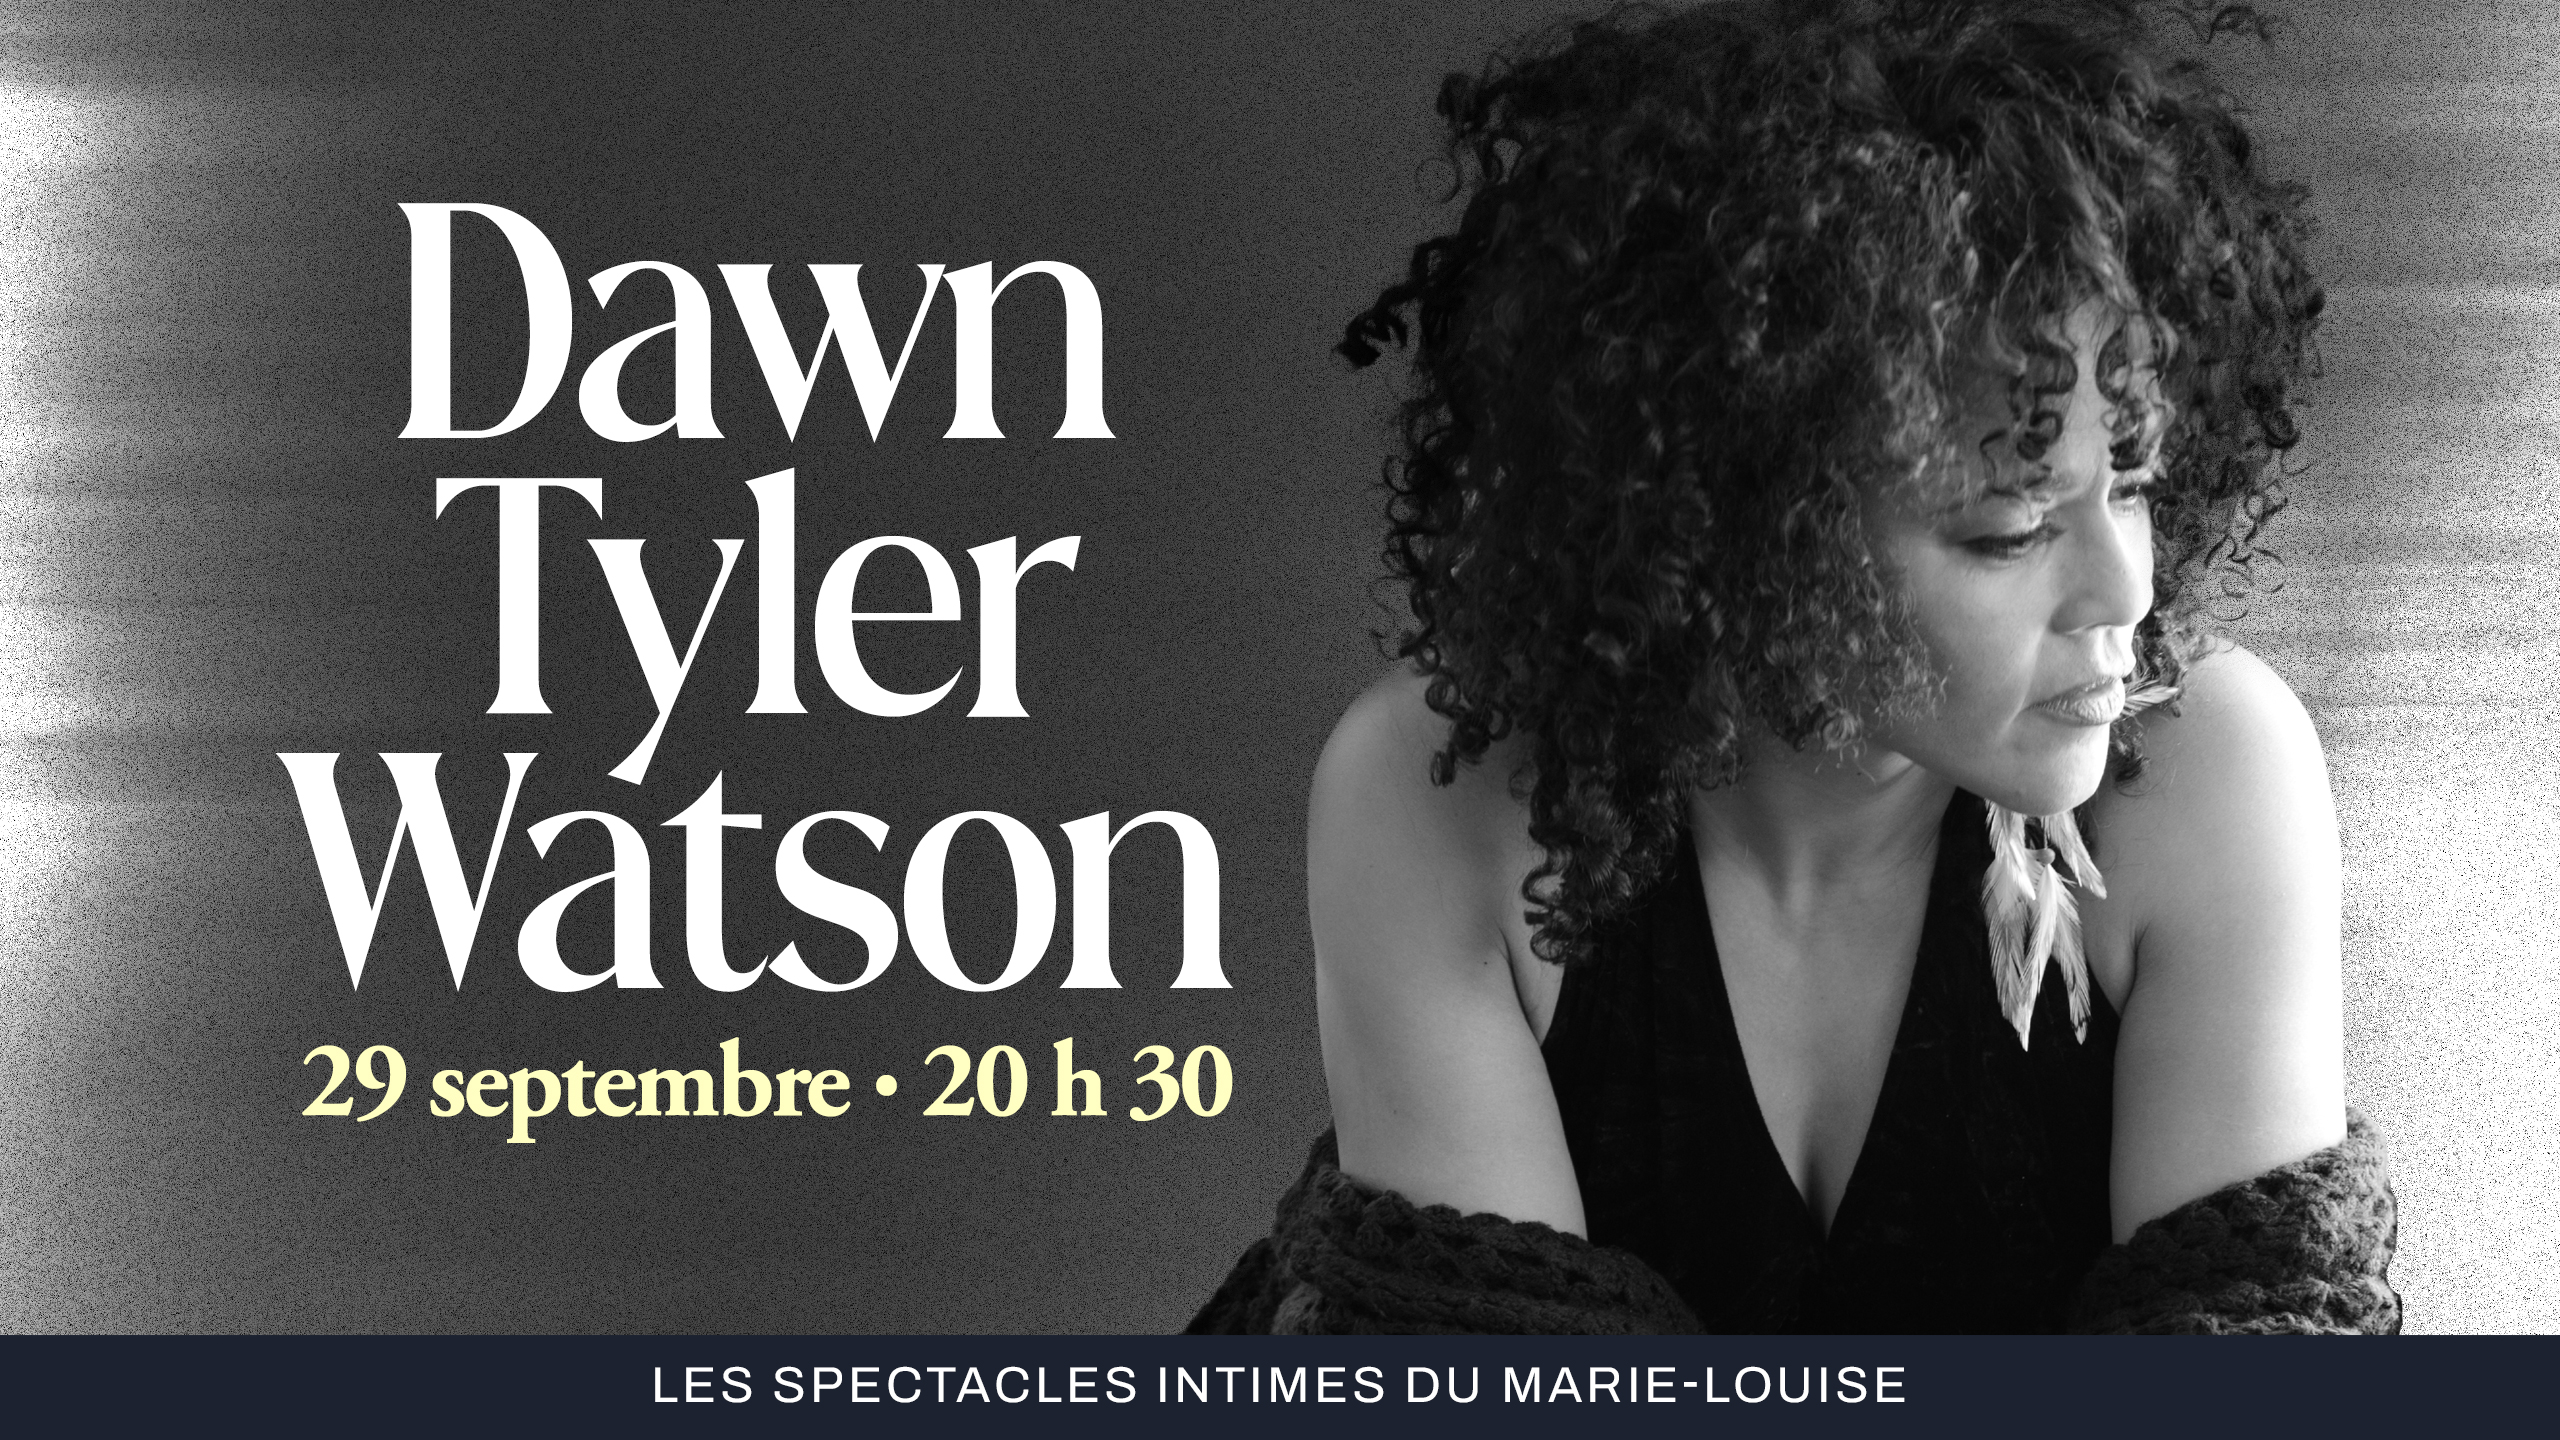 Dawn Tyler Watson billets spectacle Espace St-Denis Le Marie-Louise Montréal